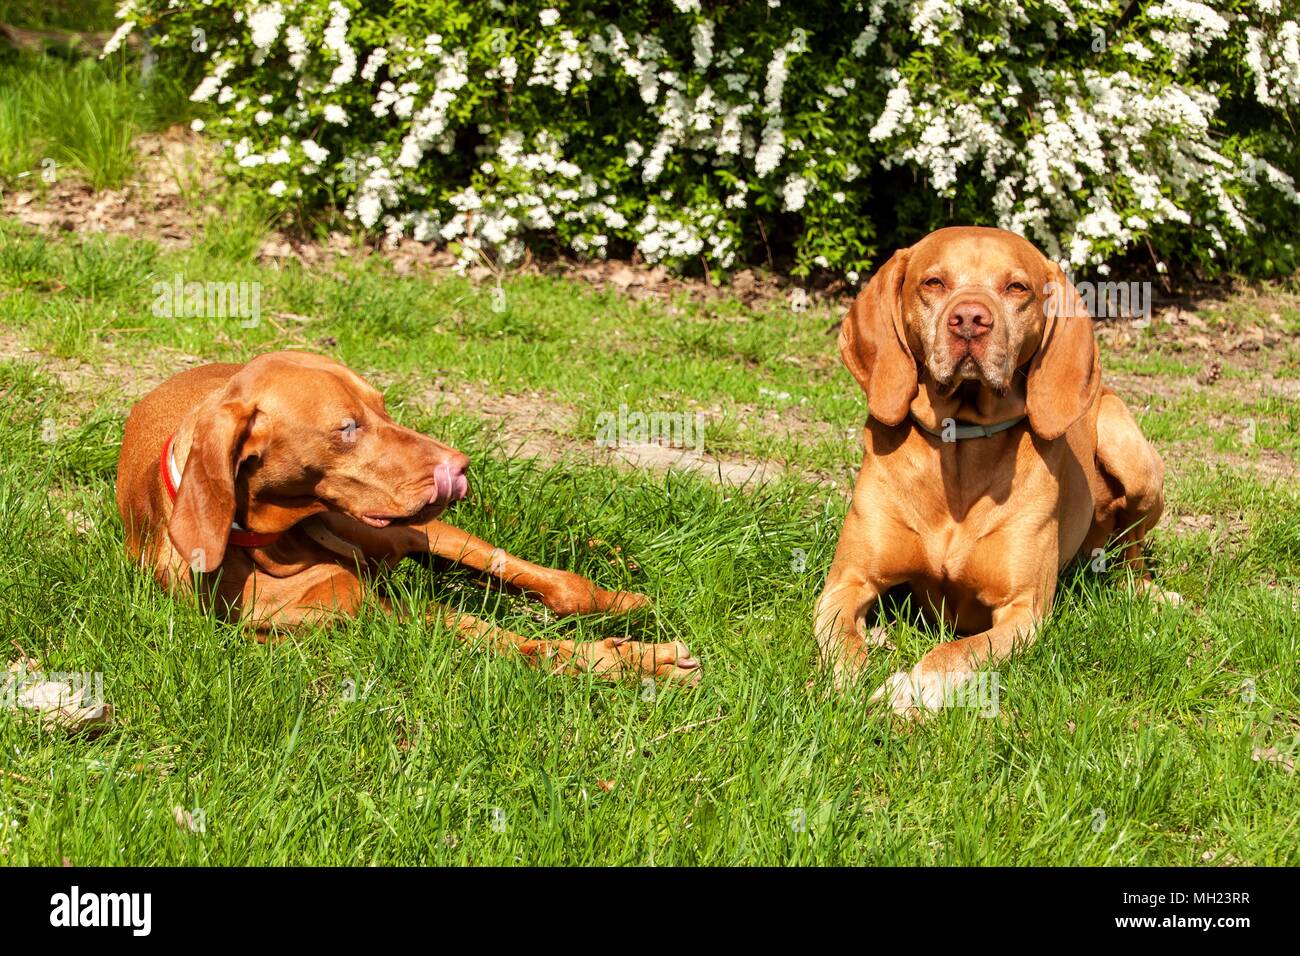 Ungarische bracke liegt im Gras. Rest für die Jagd. Jagd Hund auf einer  Wiese Stockfotografie - Alamy